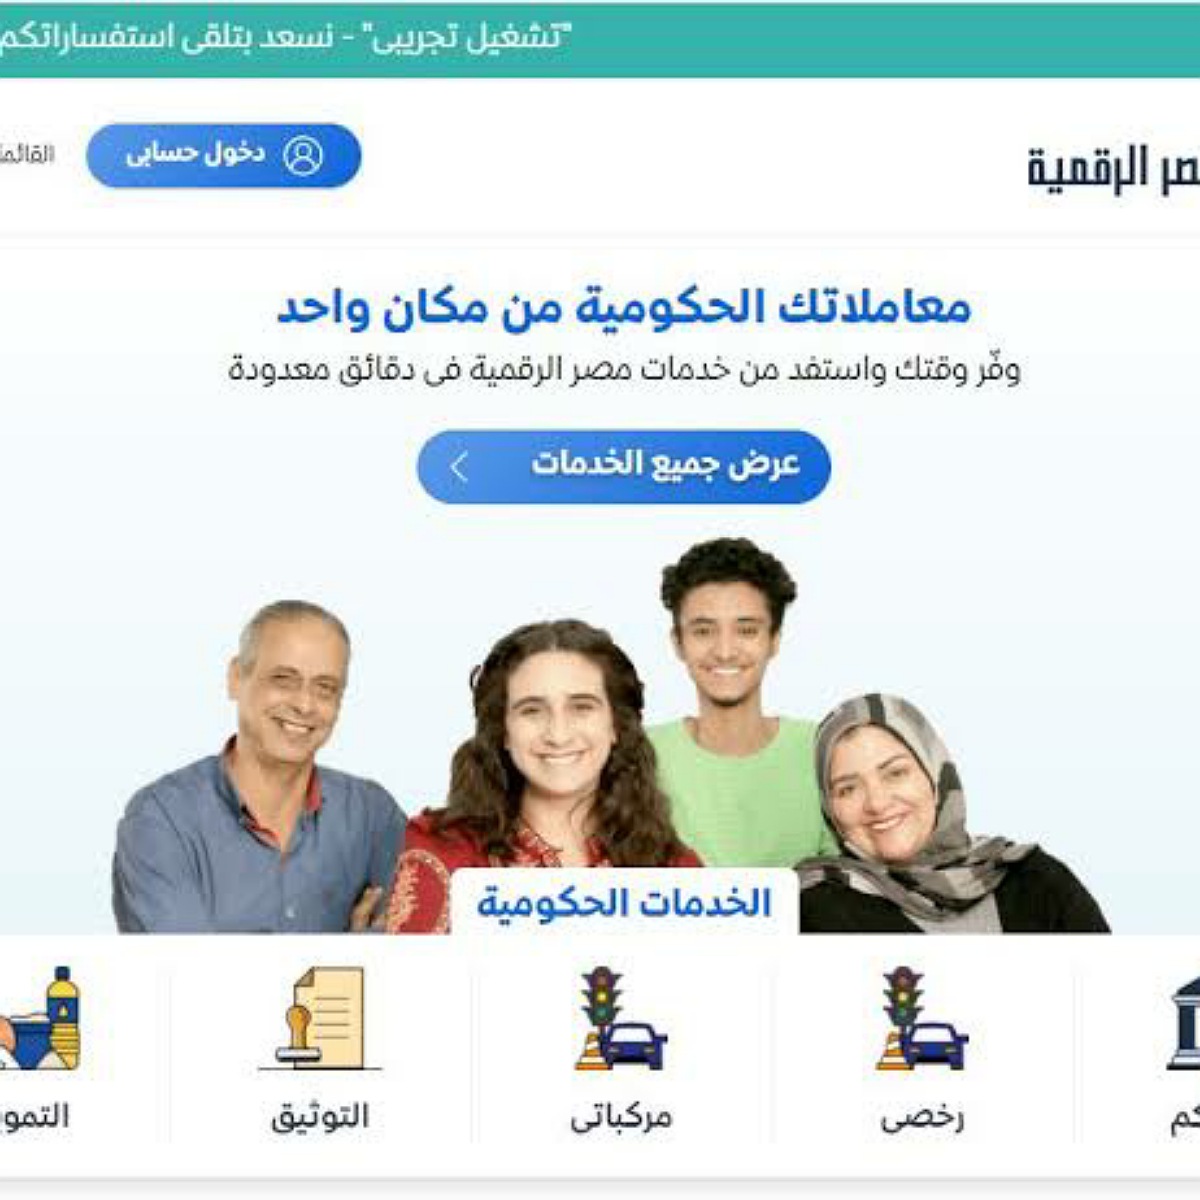 70 خدمة لدى بوابة مصر الرقمية سجل الآن بالخطوات المطلوبة